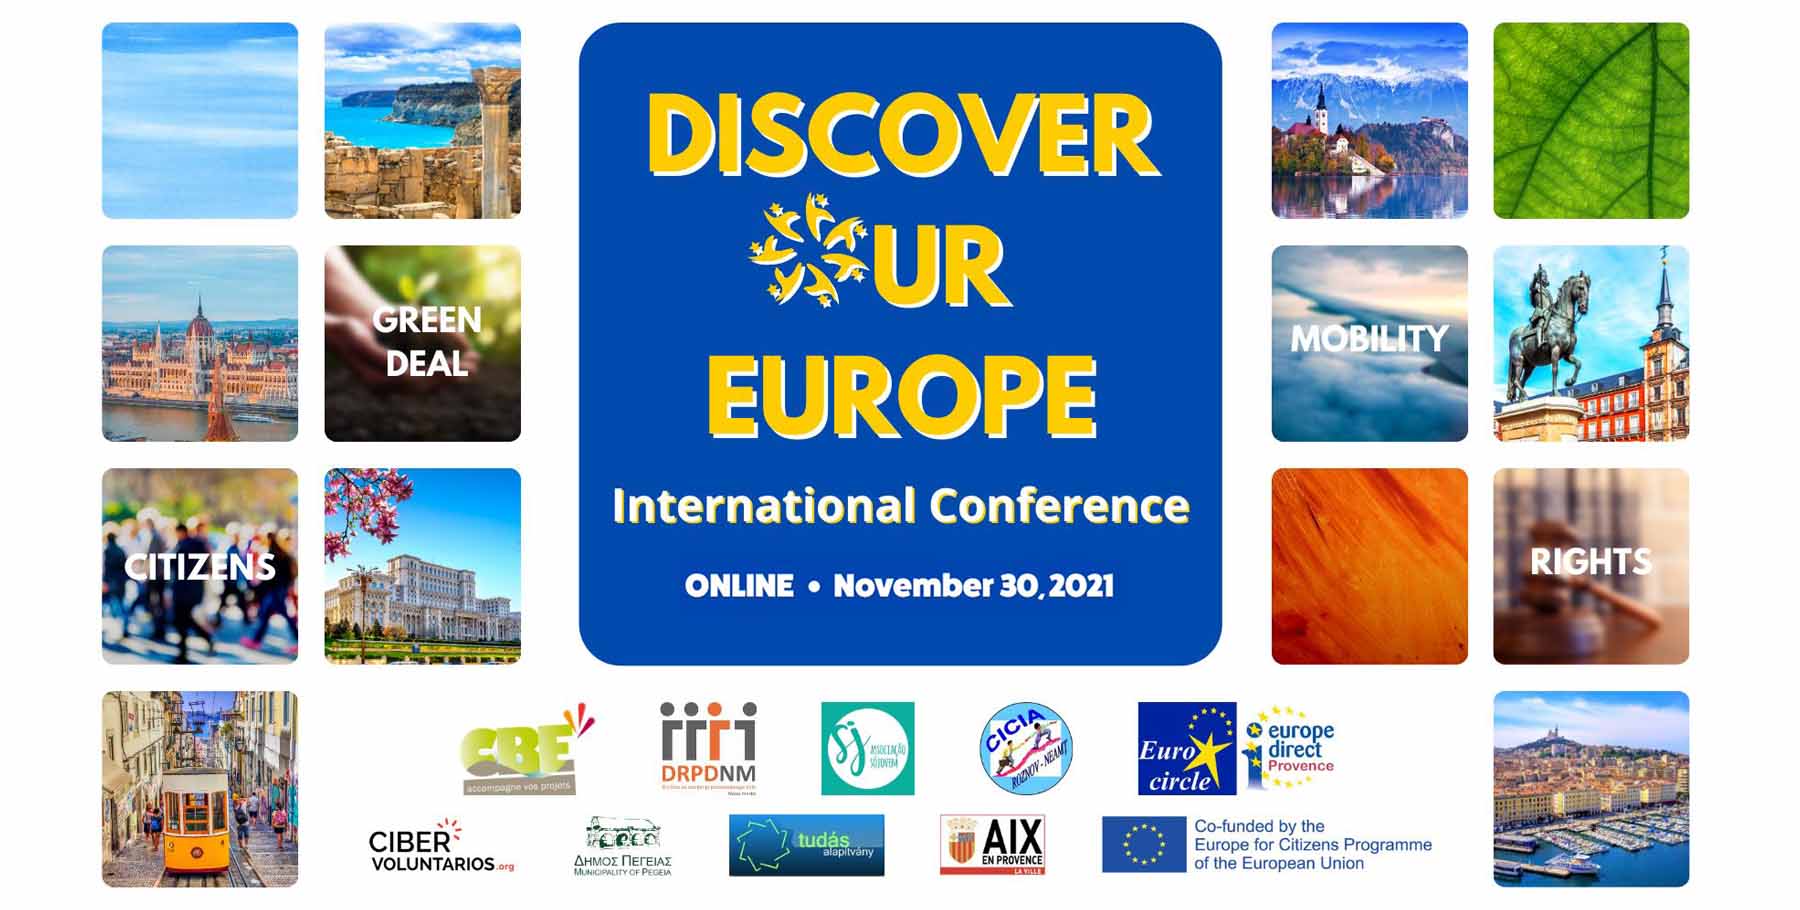 Nuevo taller sobre la Iniciativa Ciudadana Europea: Cibervoluntarios aporta su experiencia en el proyecto Discover Our Europe